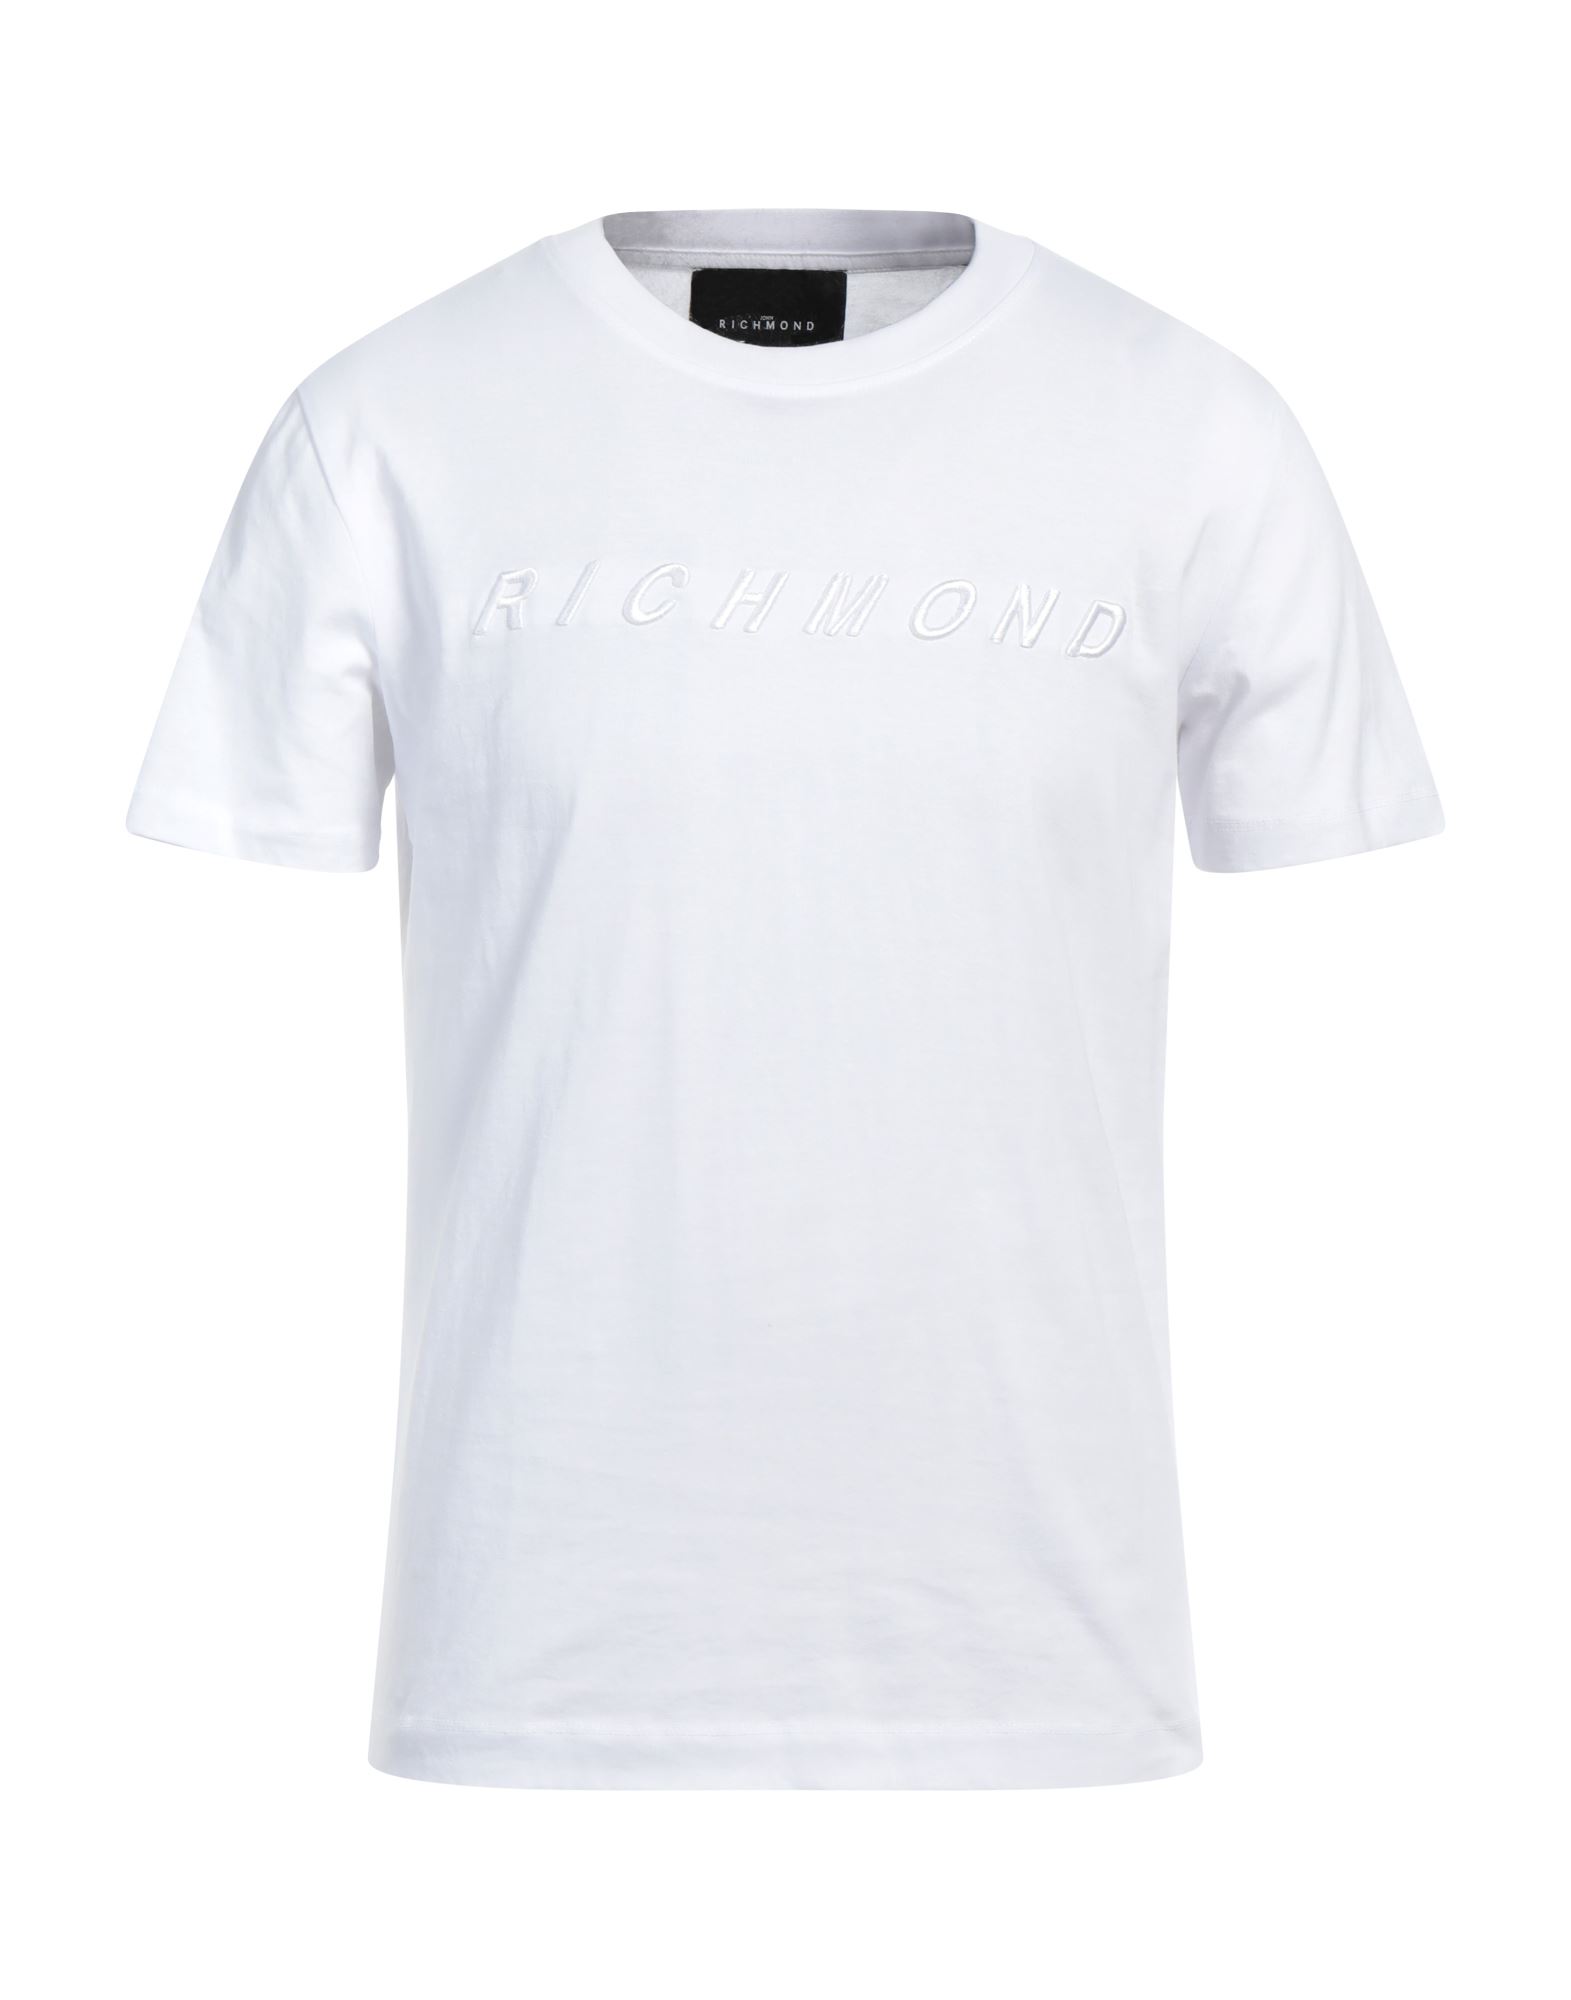 JOHN RICHMOND T-shirts Herren Weiß von JOHN RICHMOND